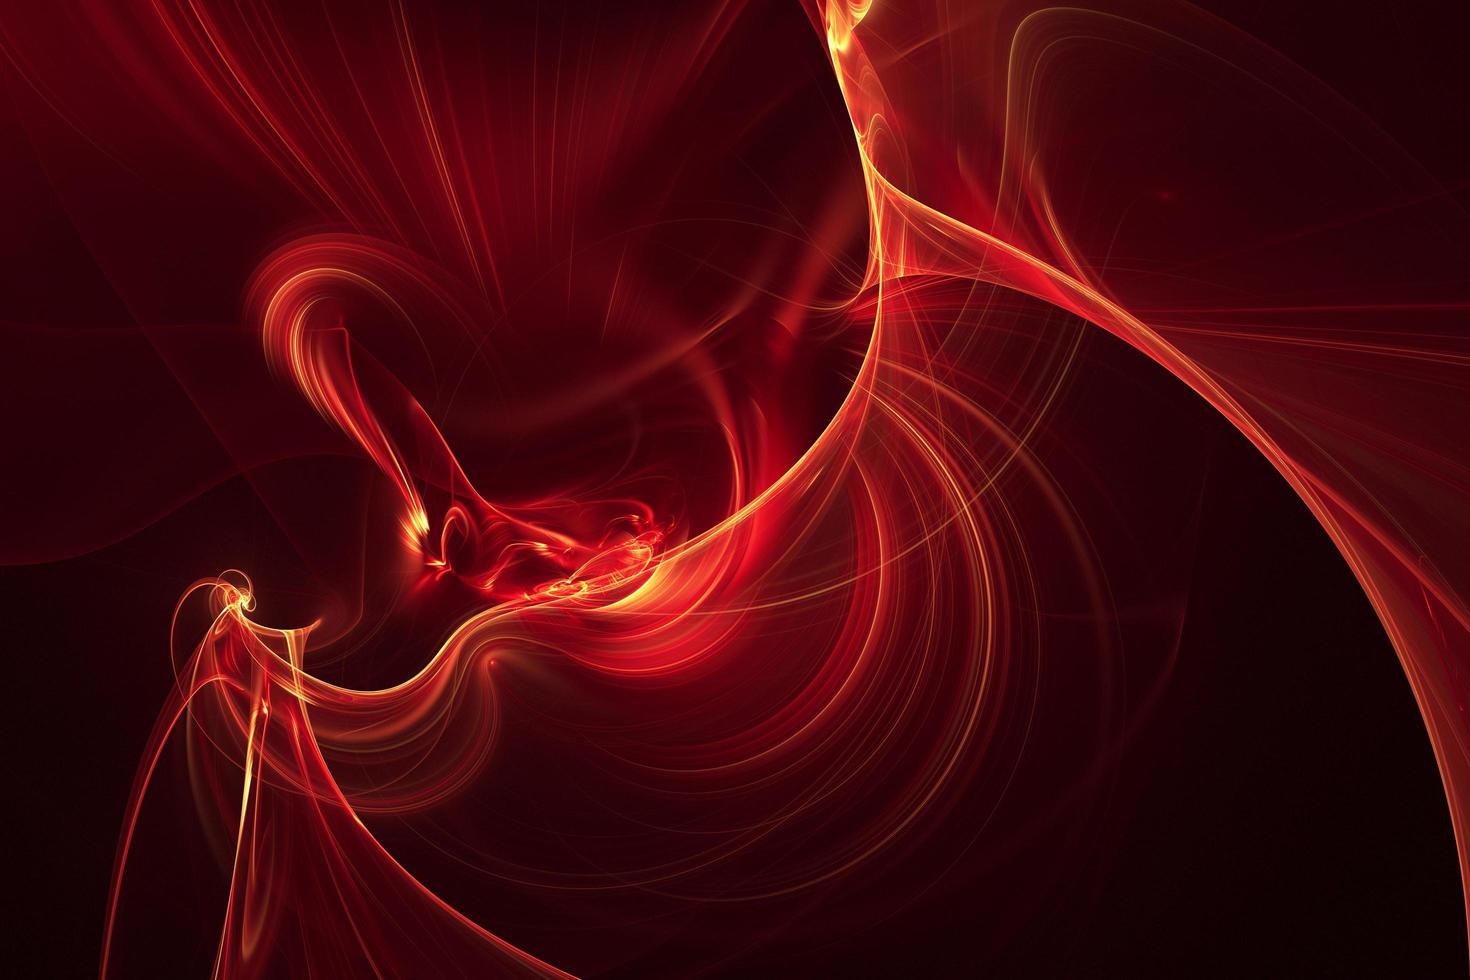 courbes élégantes lignes fond rouge. concept d'illustration 3d réaliste de vagues de fumée futuriste photo